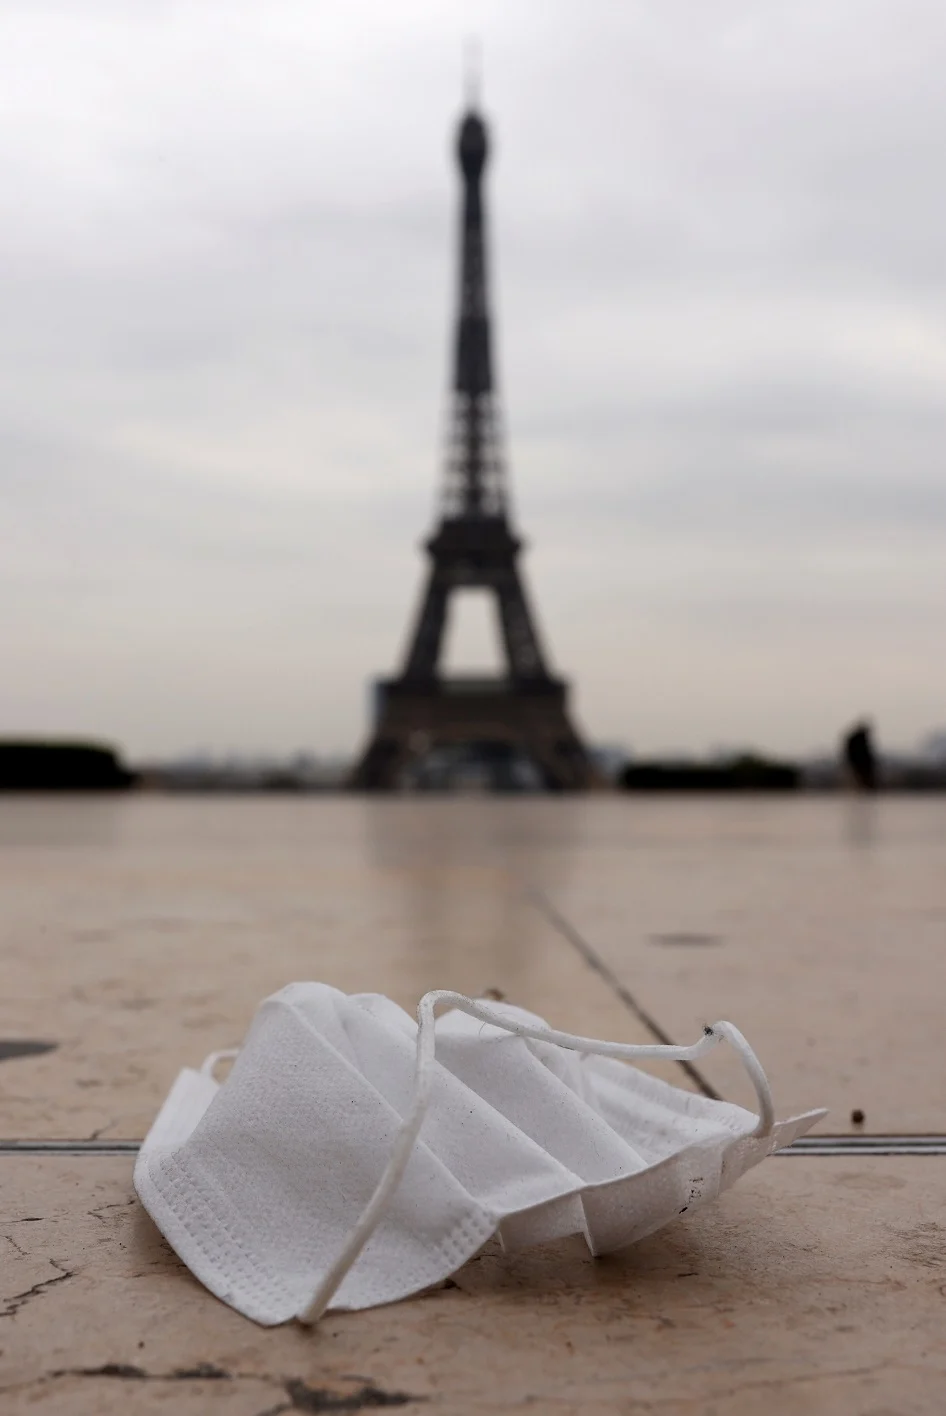 מסכה על רקע מגדל אייפל שבפריז